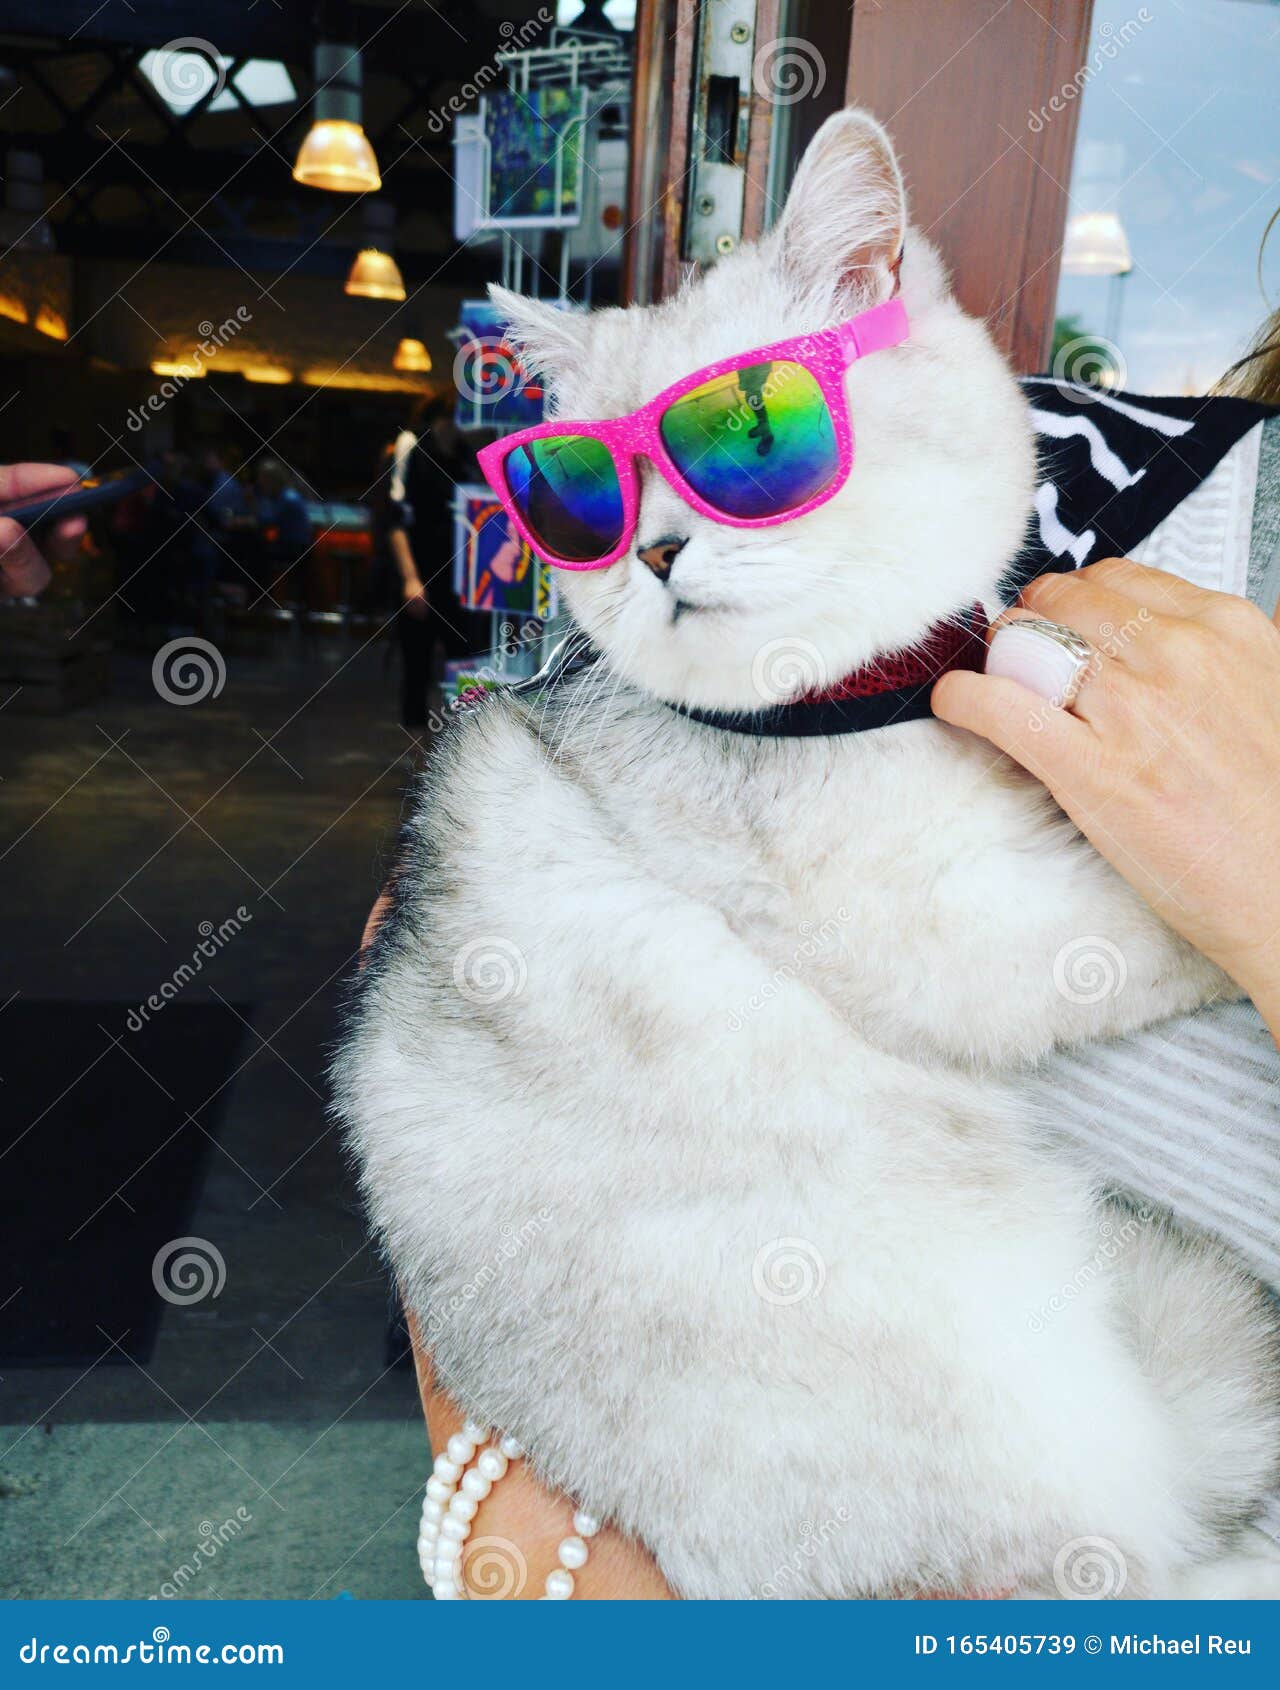 oakley sunglasses, funny cat, howth ireland